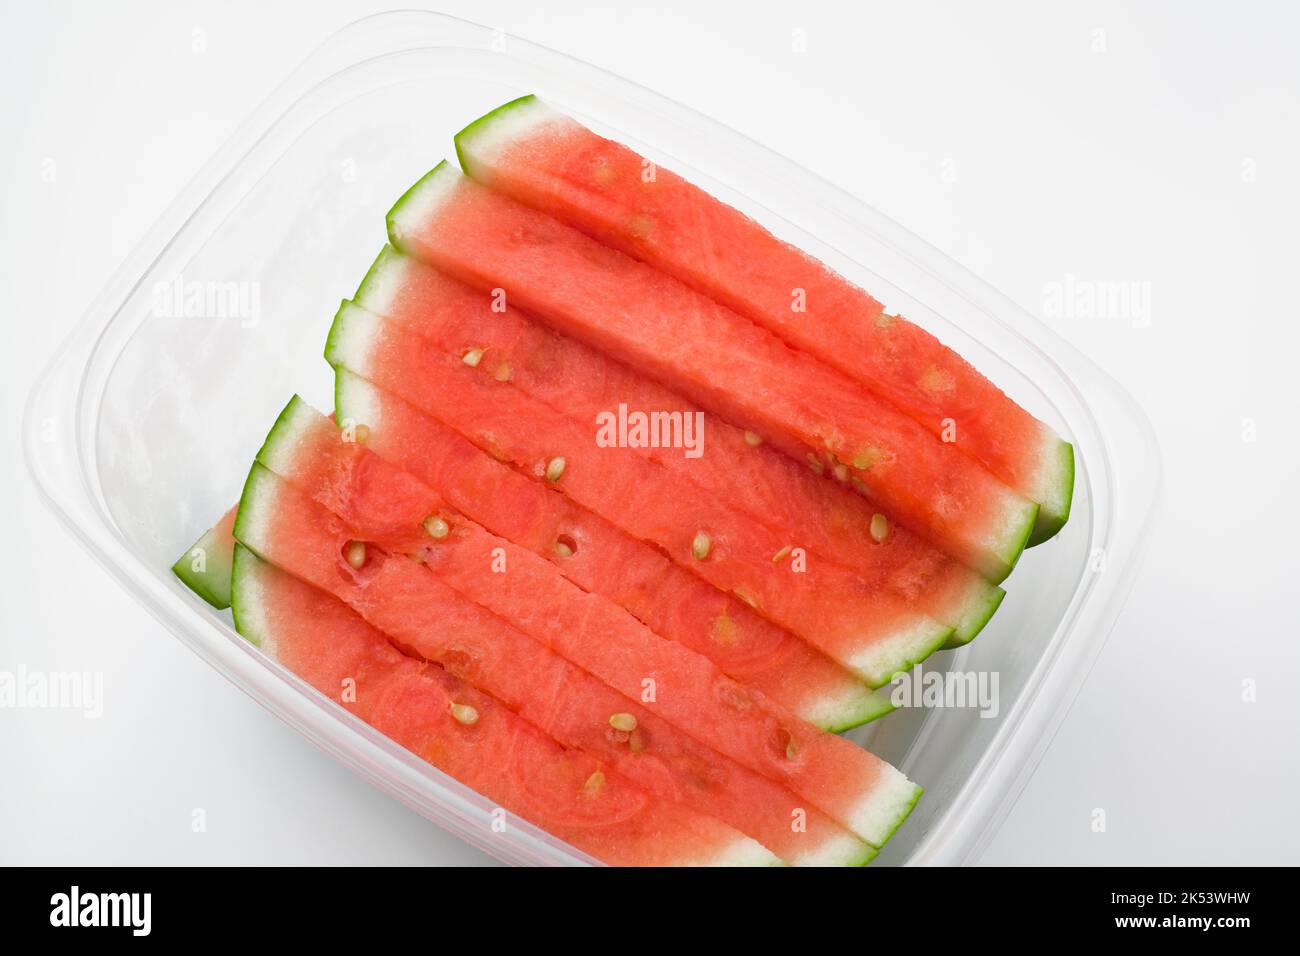 Citrullus lanatus - Watermelon slices in plastic container. Stock Photo